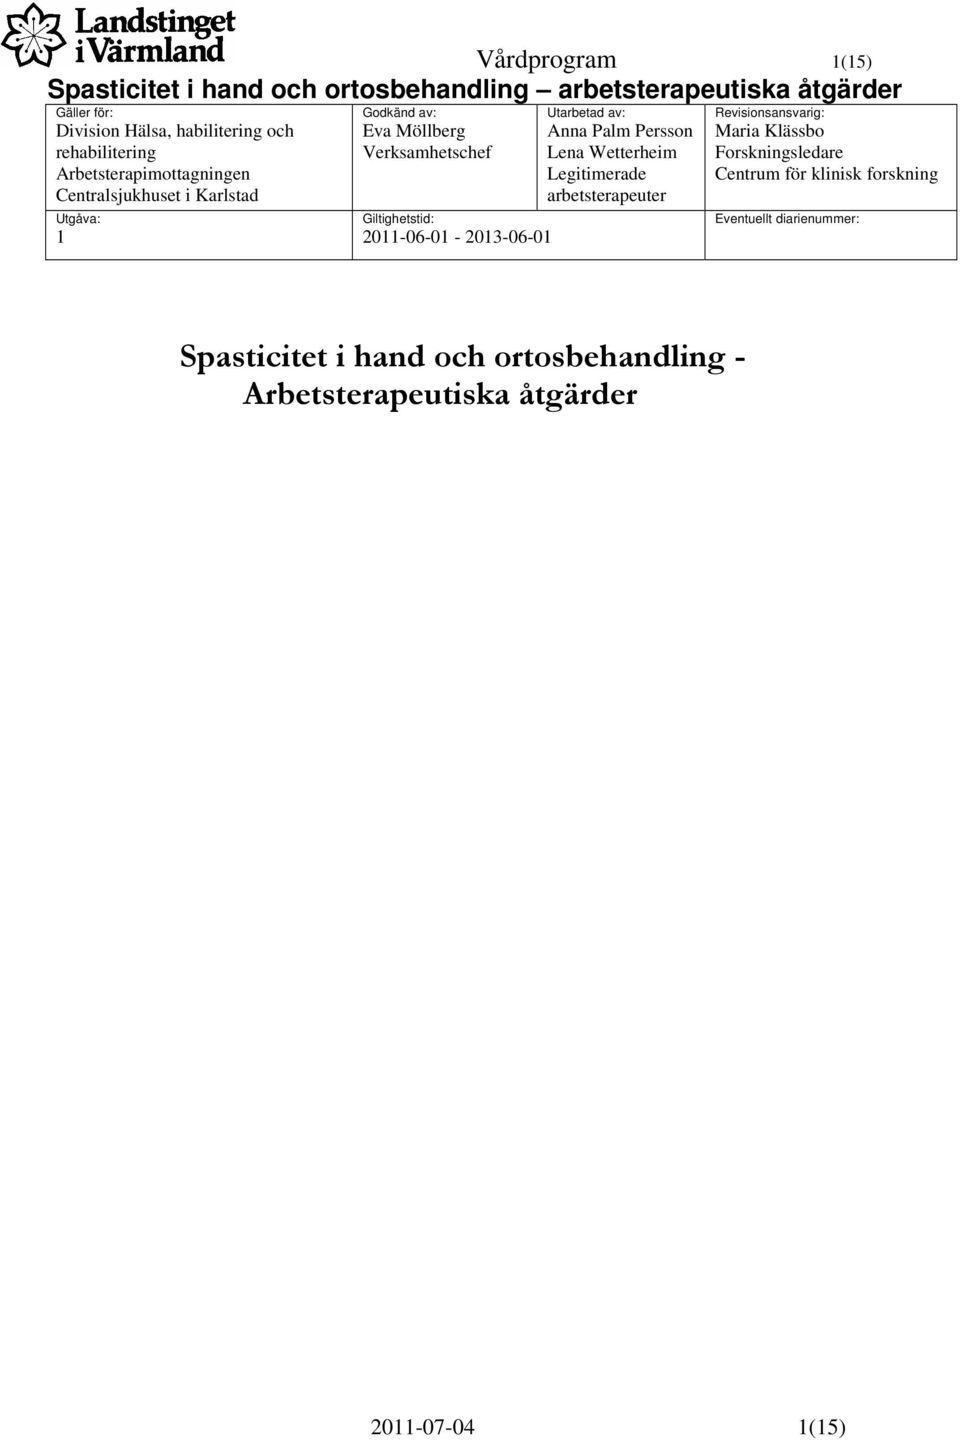 Wetterheim Legitimerade arbetsterapeuter Revisionsansvarig: Maria Klässbo Forskningsledare Centrum